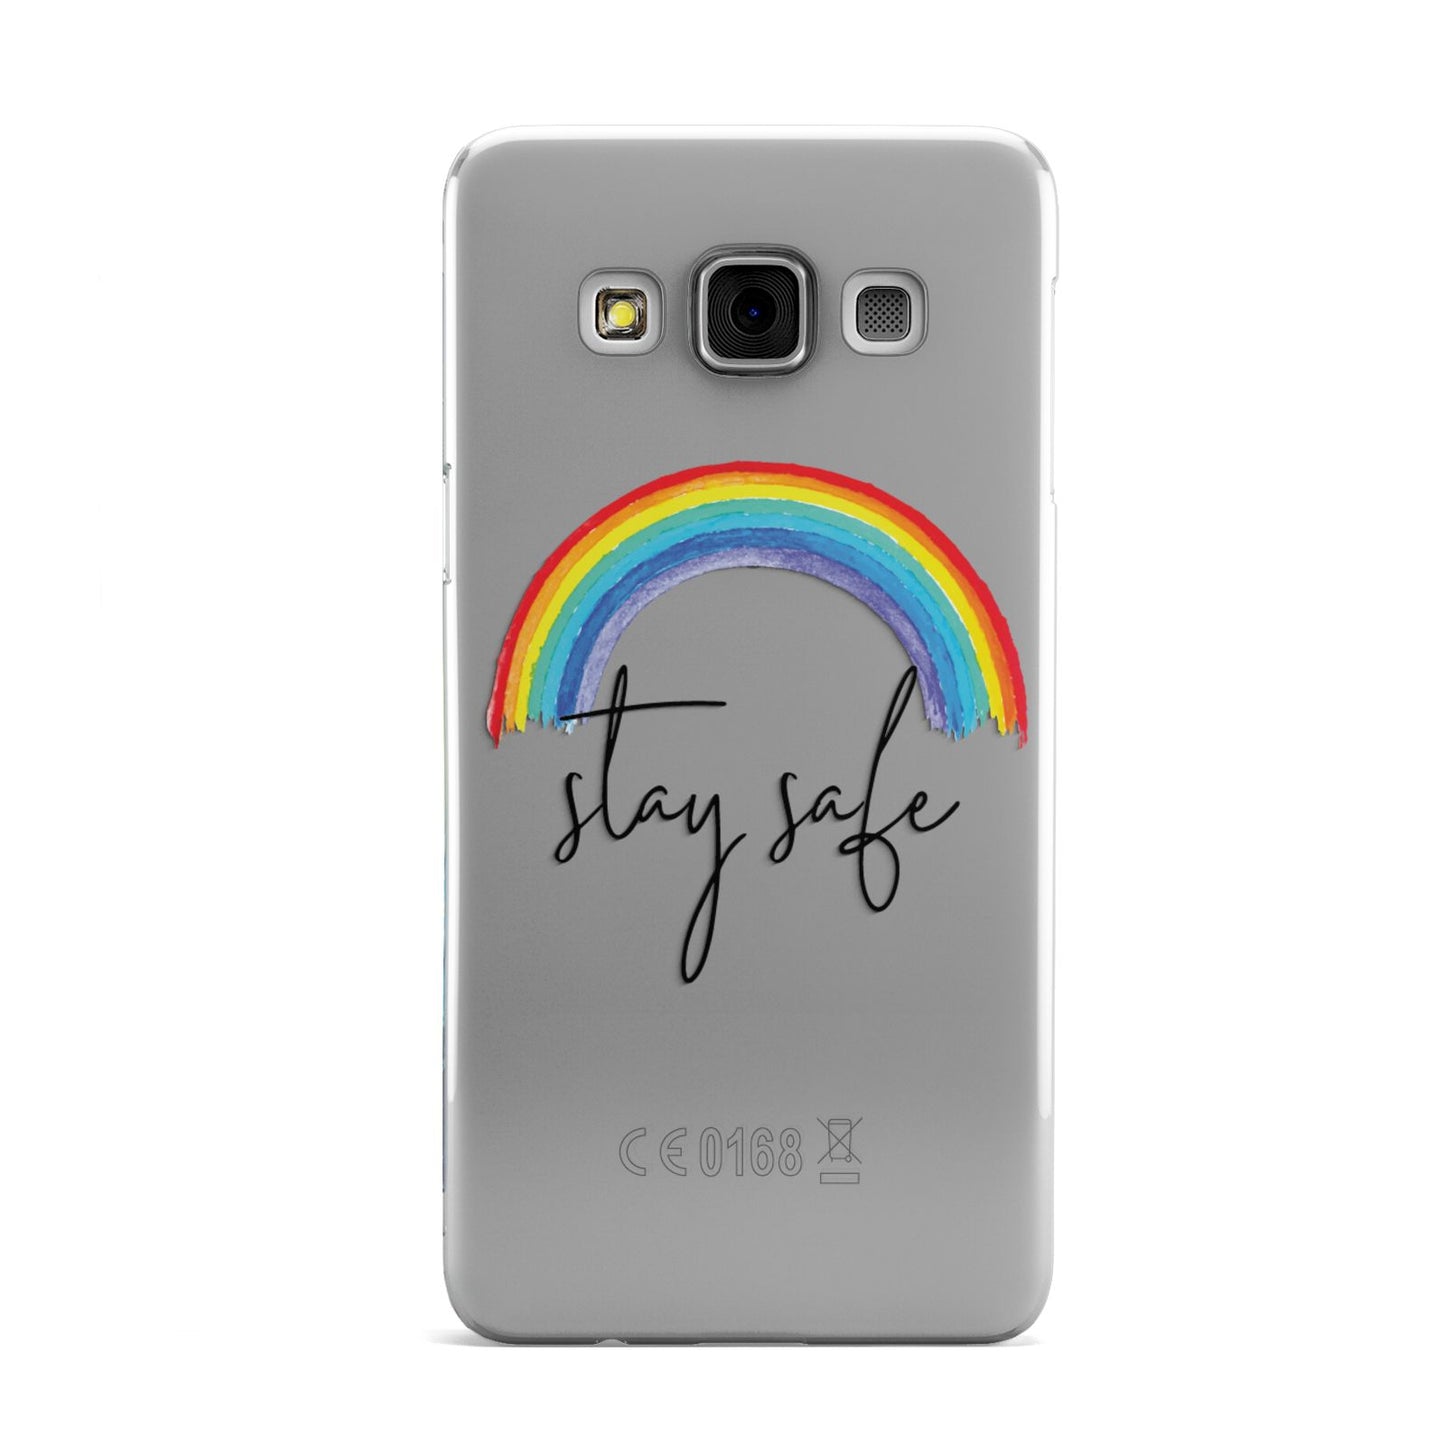 Stay Safe Rainbow Samsung Galaxy A3 Case